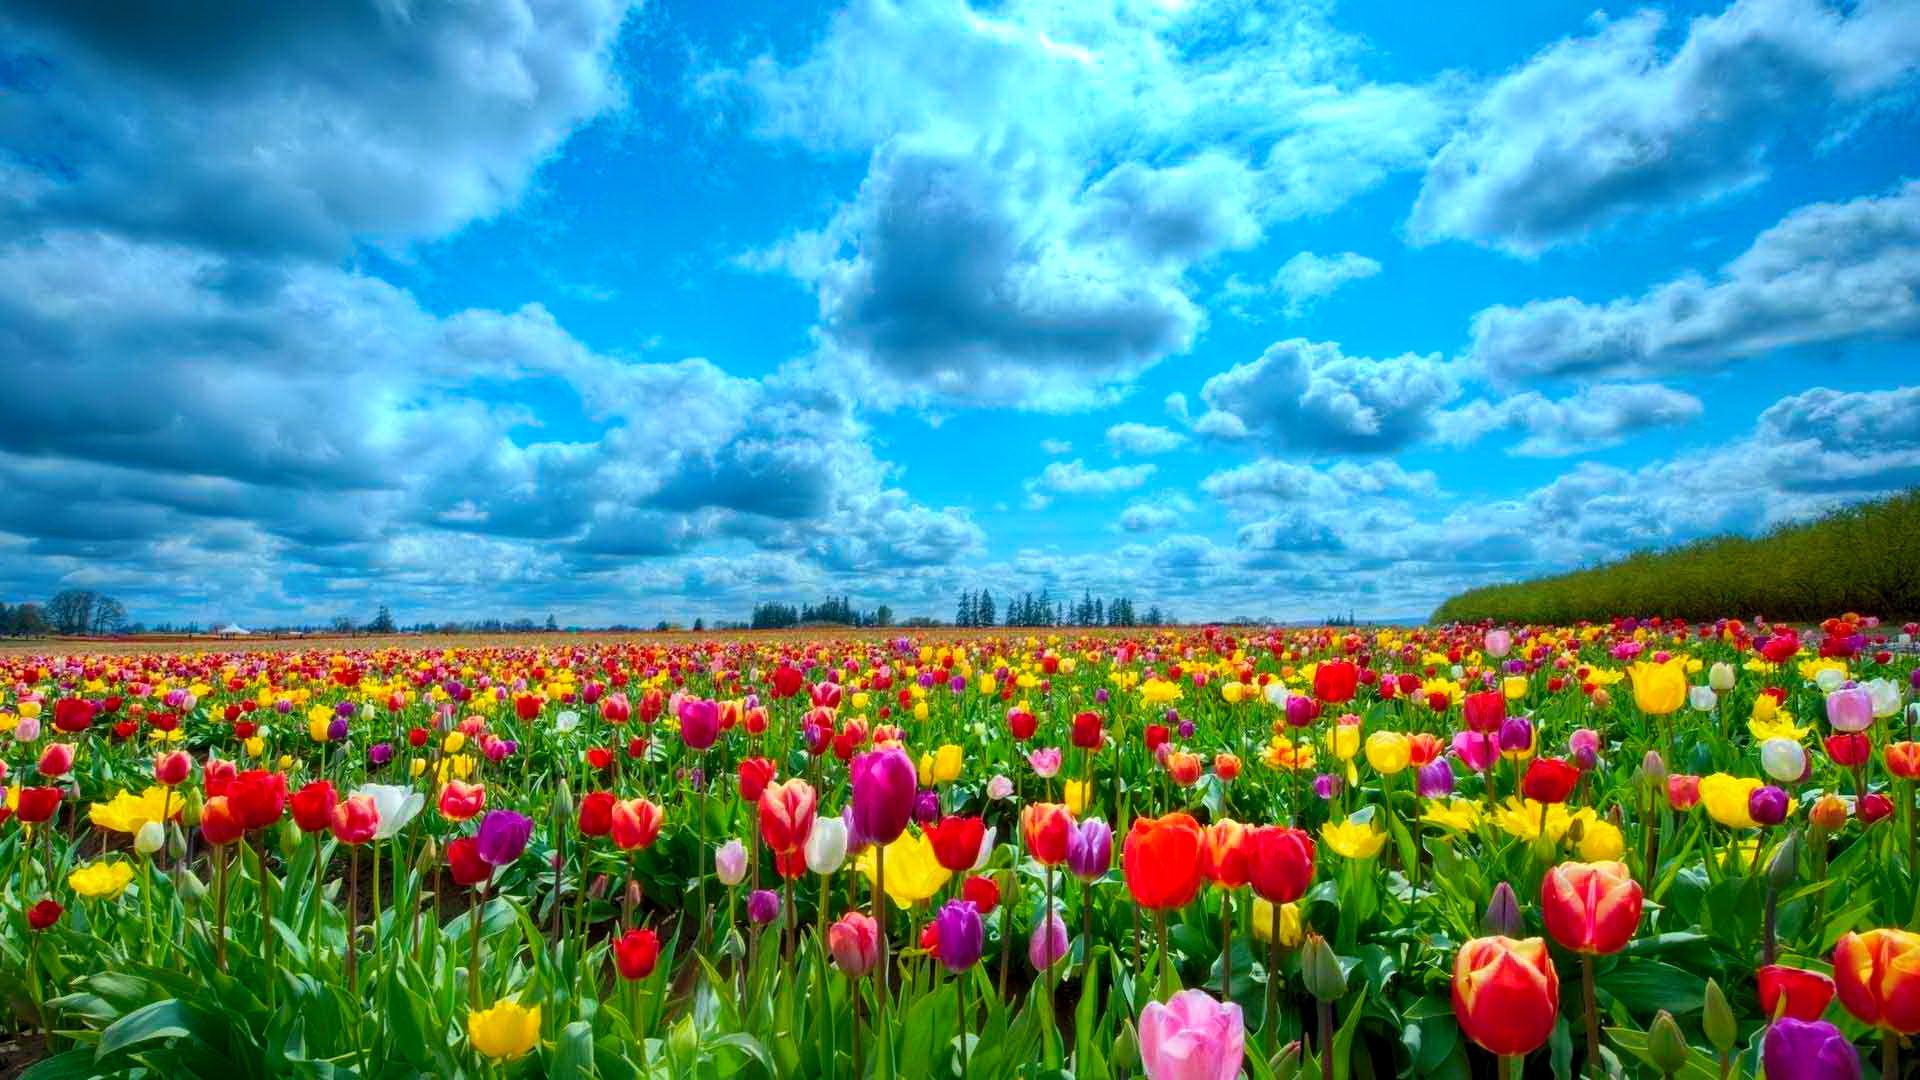 A field of tulips. Field wallpaper, Beautiful flowers wallpaper, Flowers nature